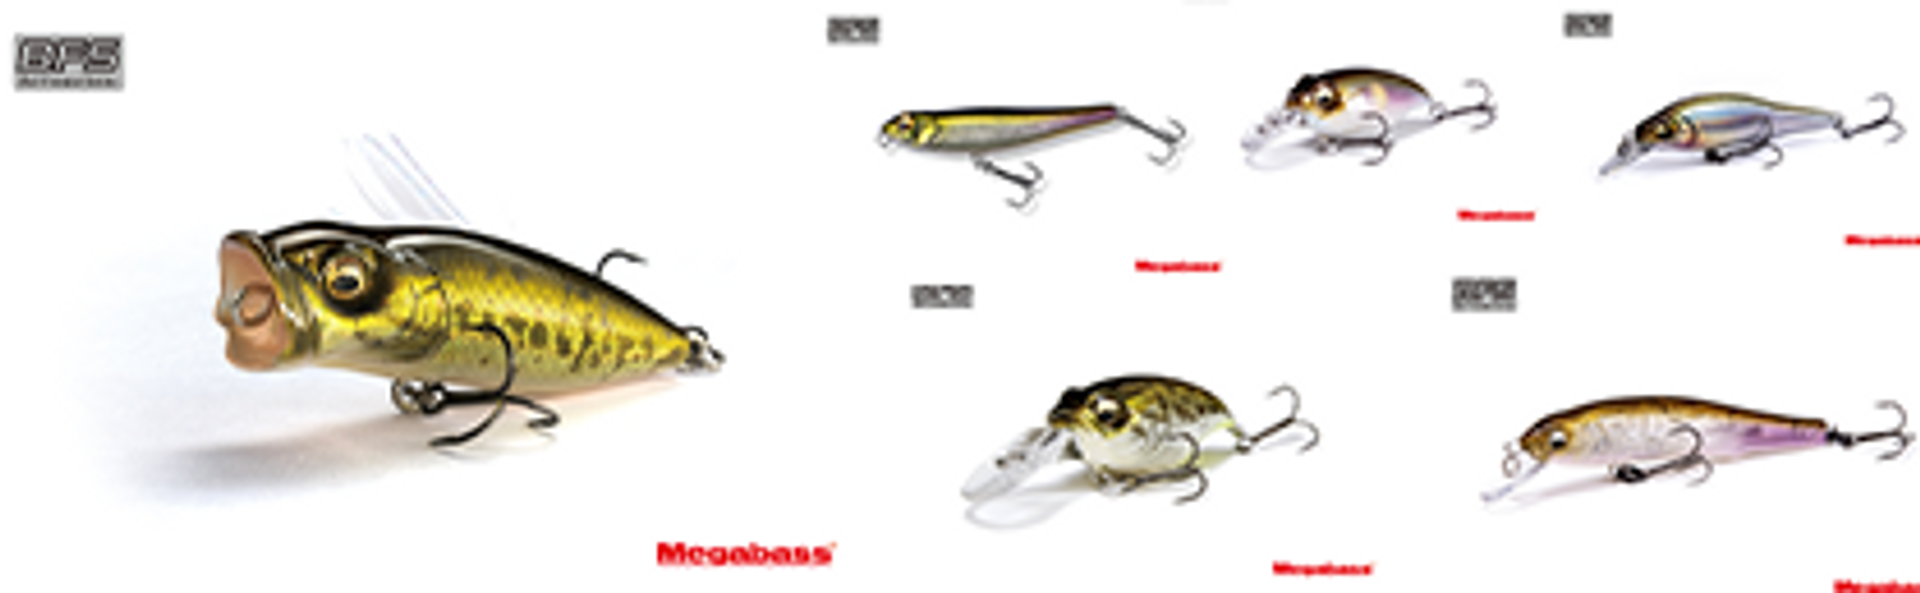 Megabass Tackles BFS - Get a First Look at Megabass' New BFS Baits - FishUSA